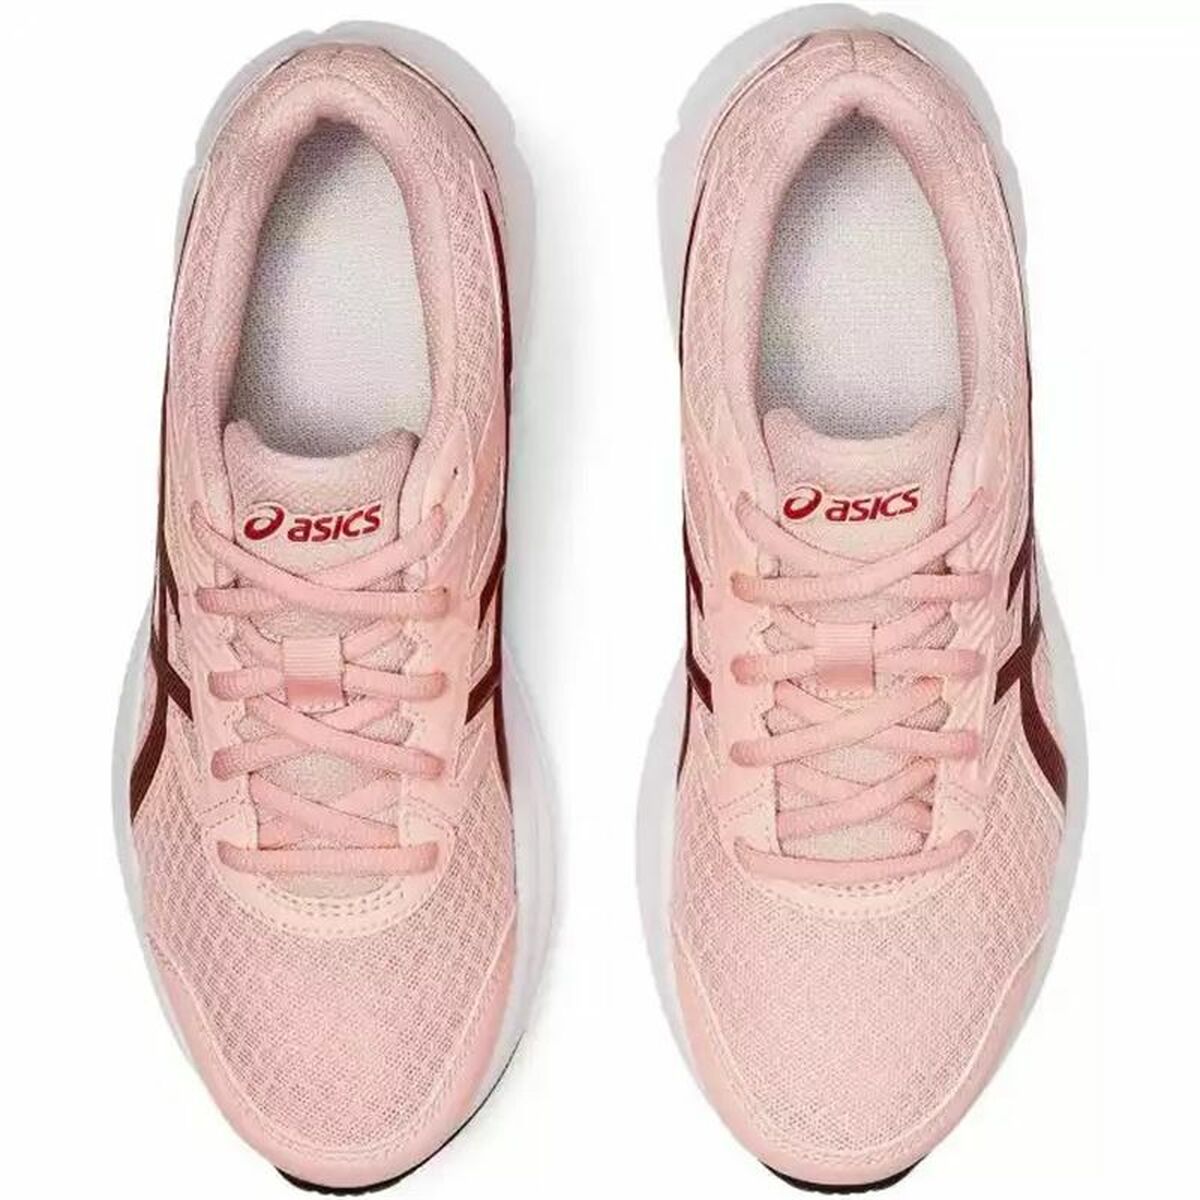 Chaussures de Running pour Adultes Asics Jolt 3 Rose clair Femme